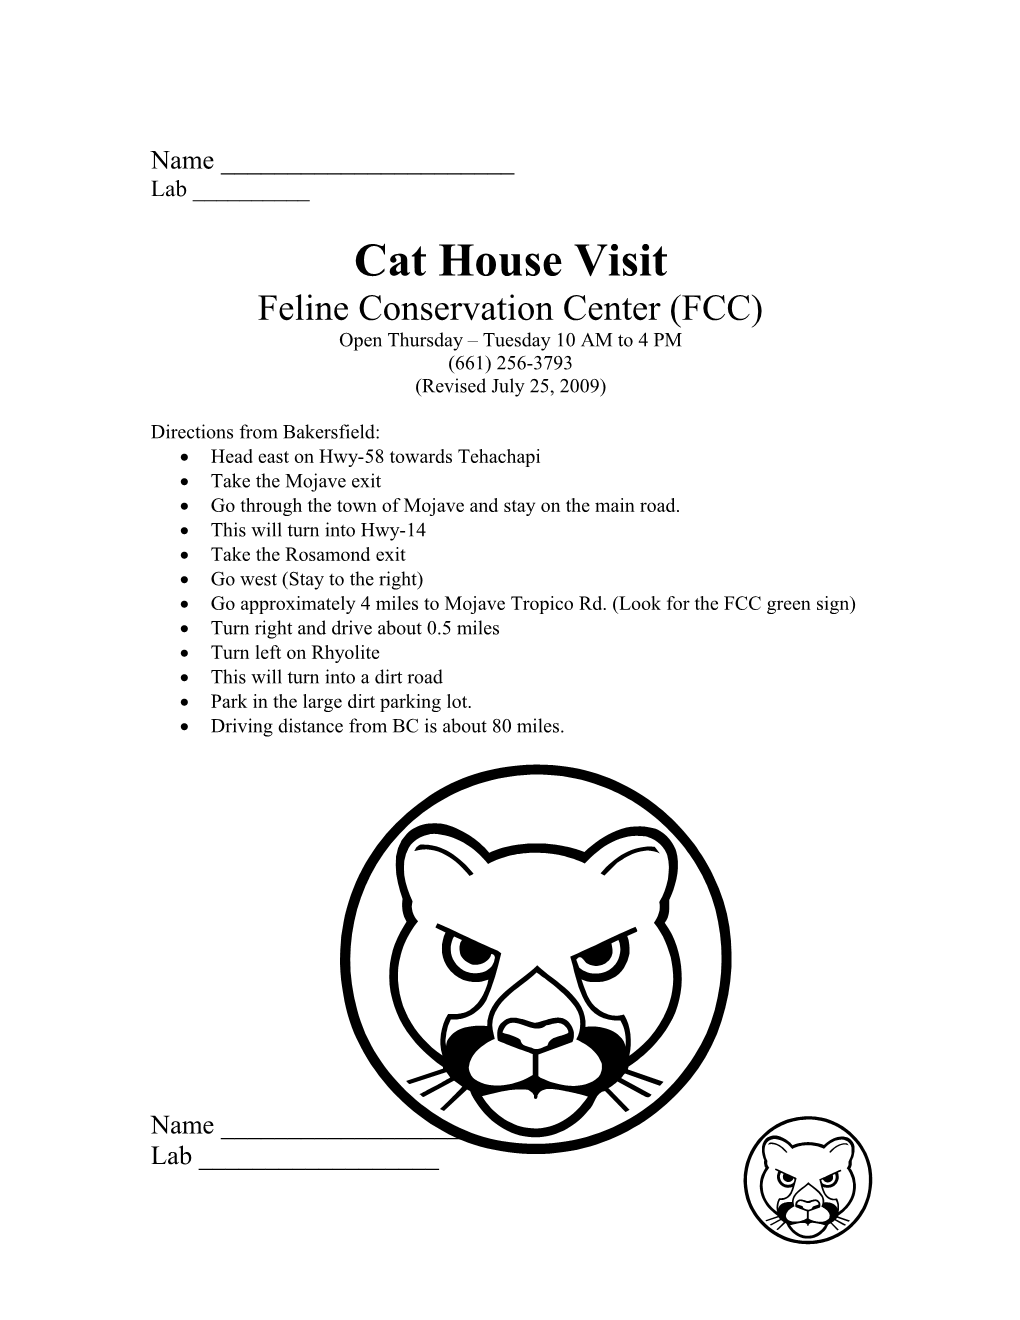 Cat House Visit